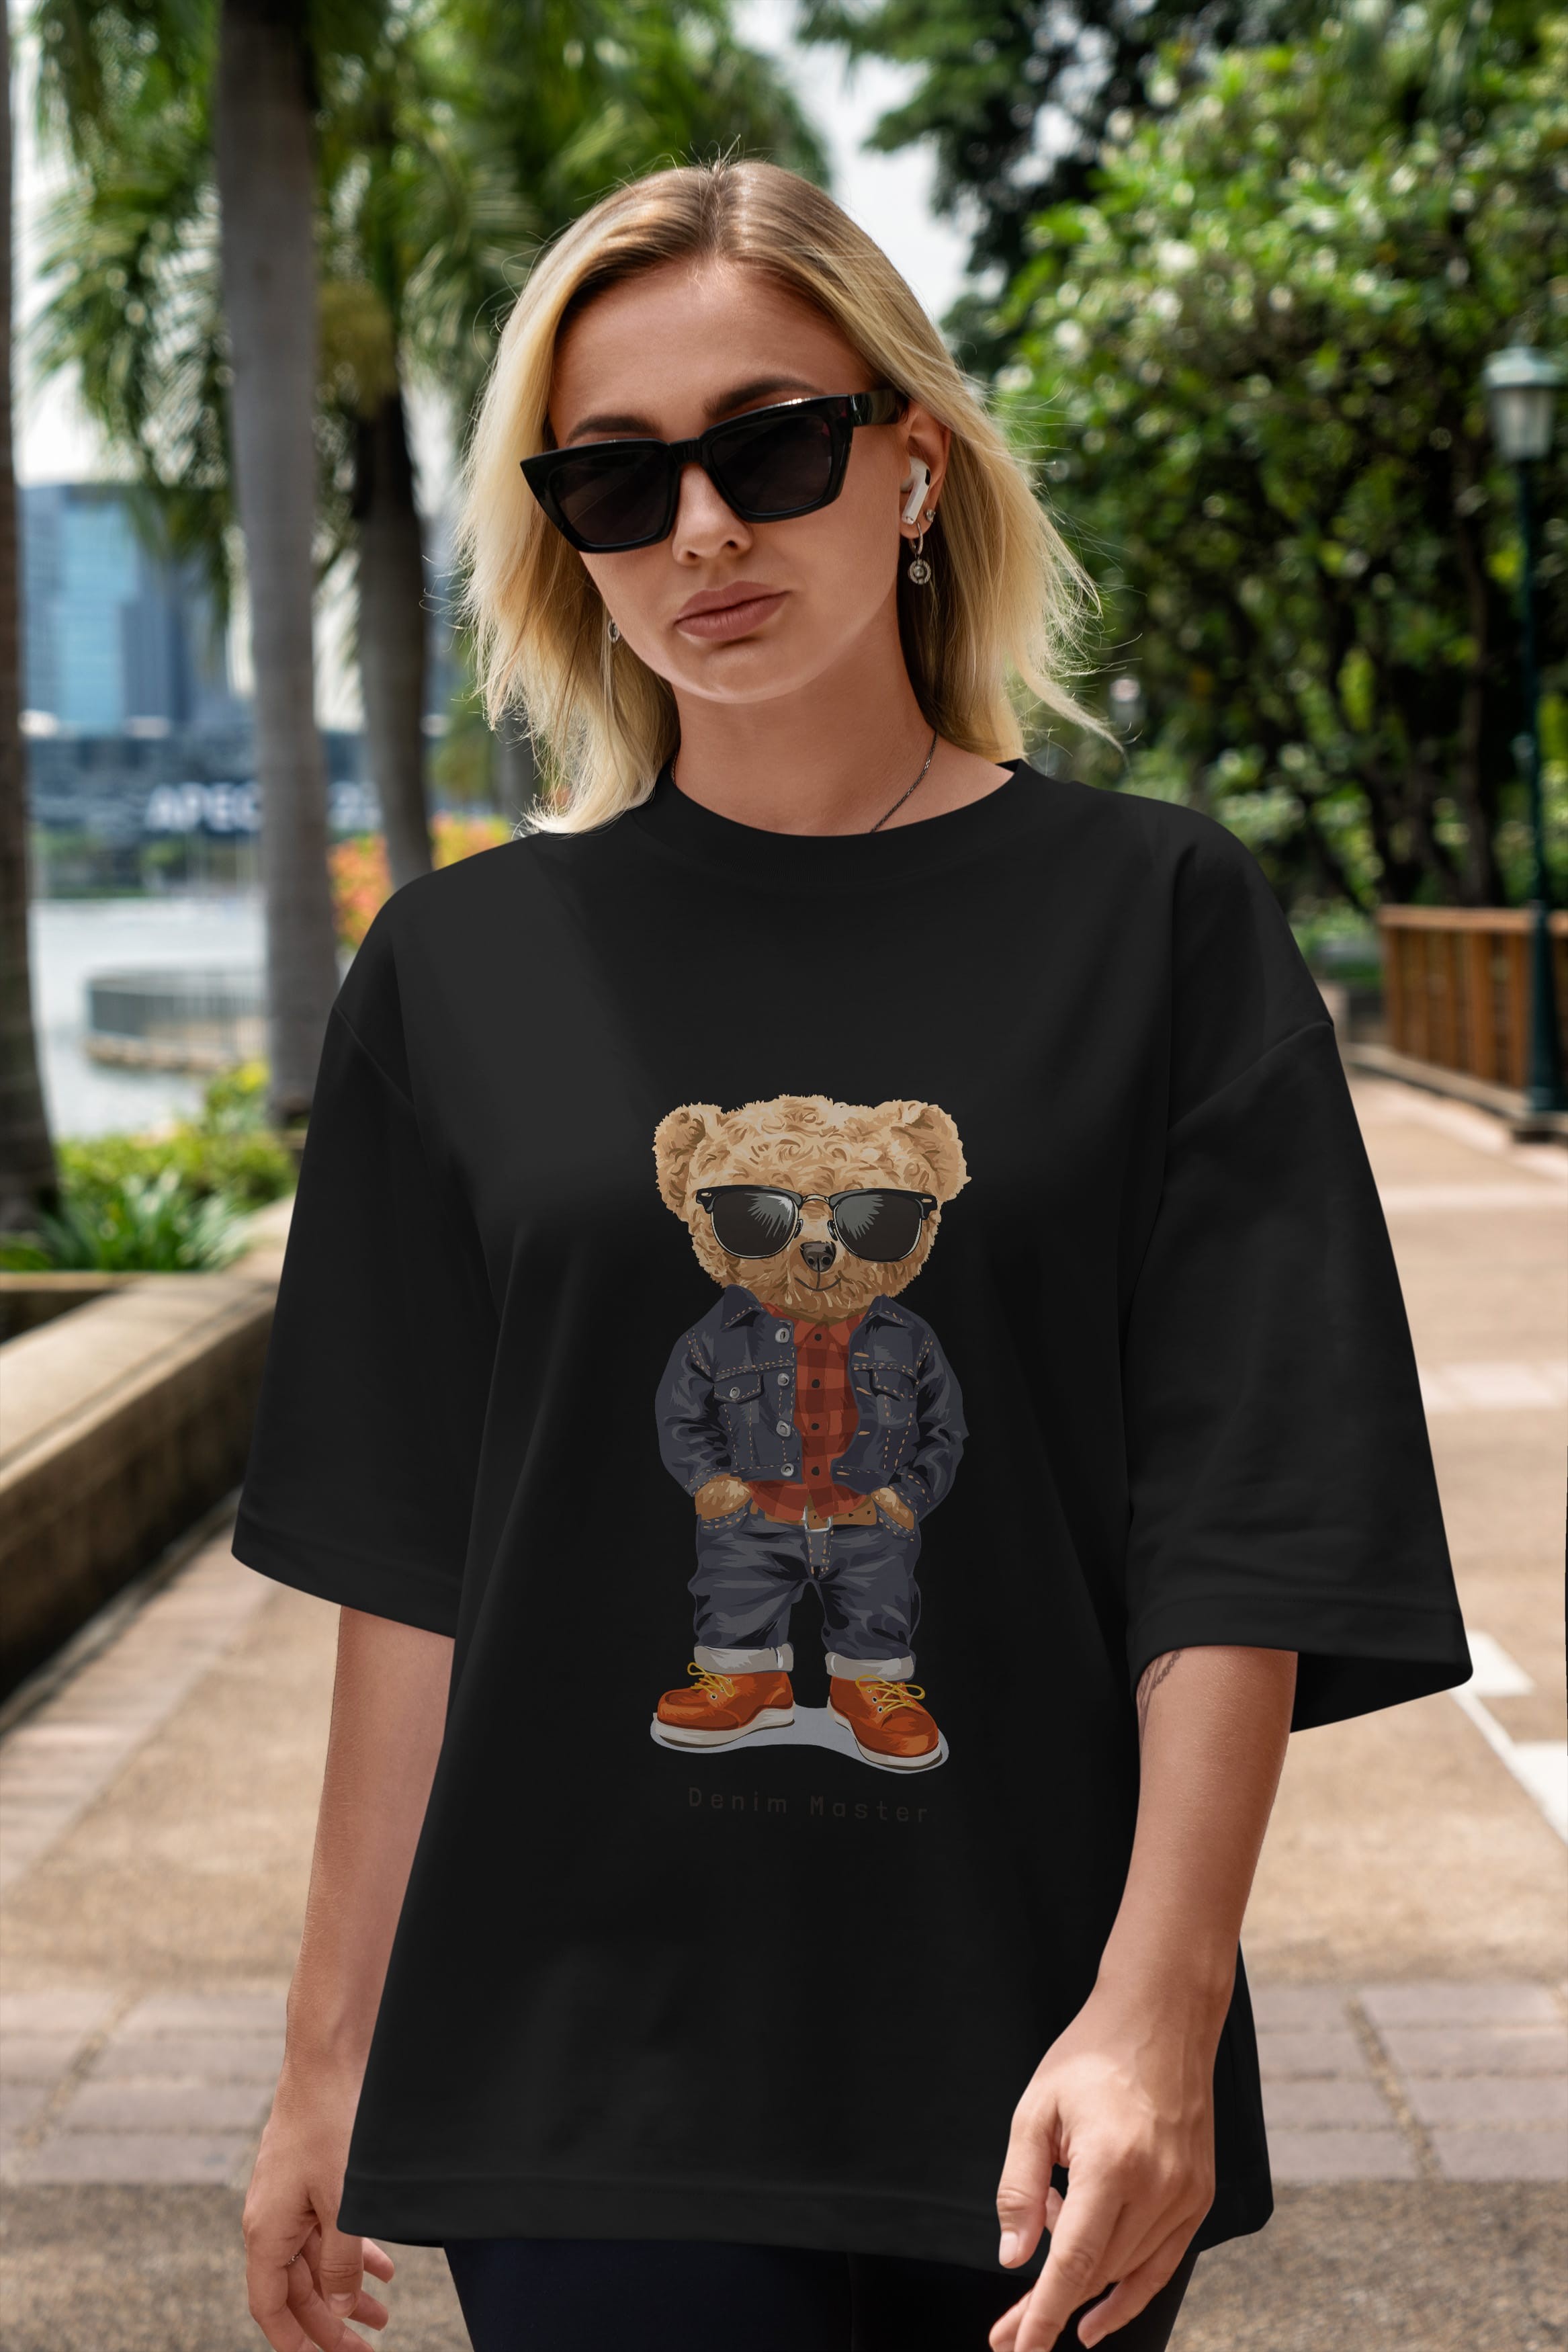 Teddy Bear Tarz Ön Baskılı Oversize t-shirt Erkek Kadın Unisex %100 Pamuk